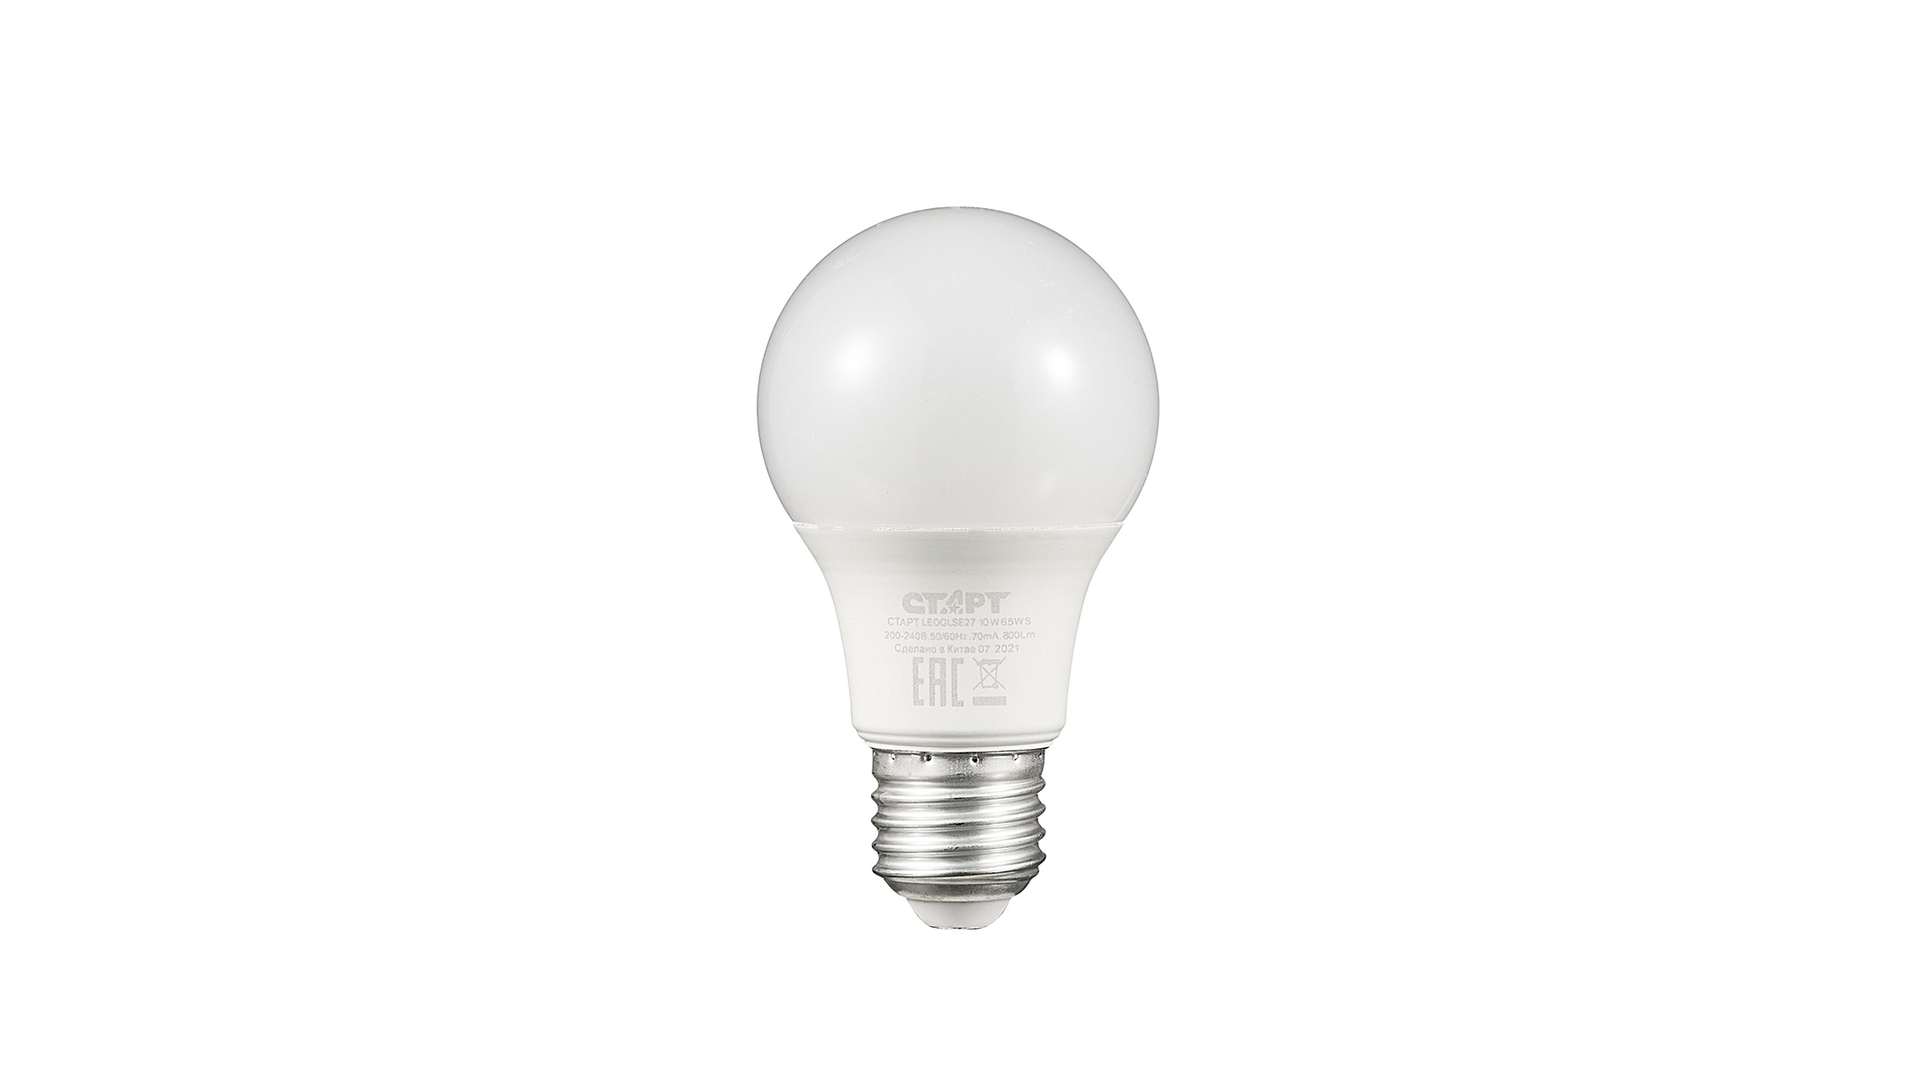 Лампа светодиодная E27 грушевидная, 10 Вт, 6500 K / холодный свет, 220 В, СТАРТ LEDGLSE27 10W 65 WS (17289)